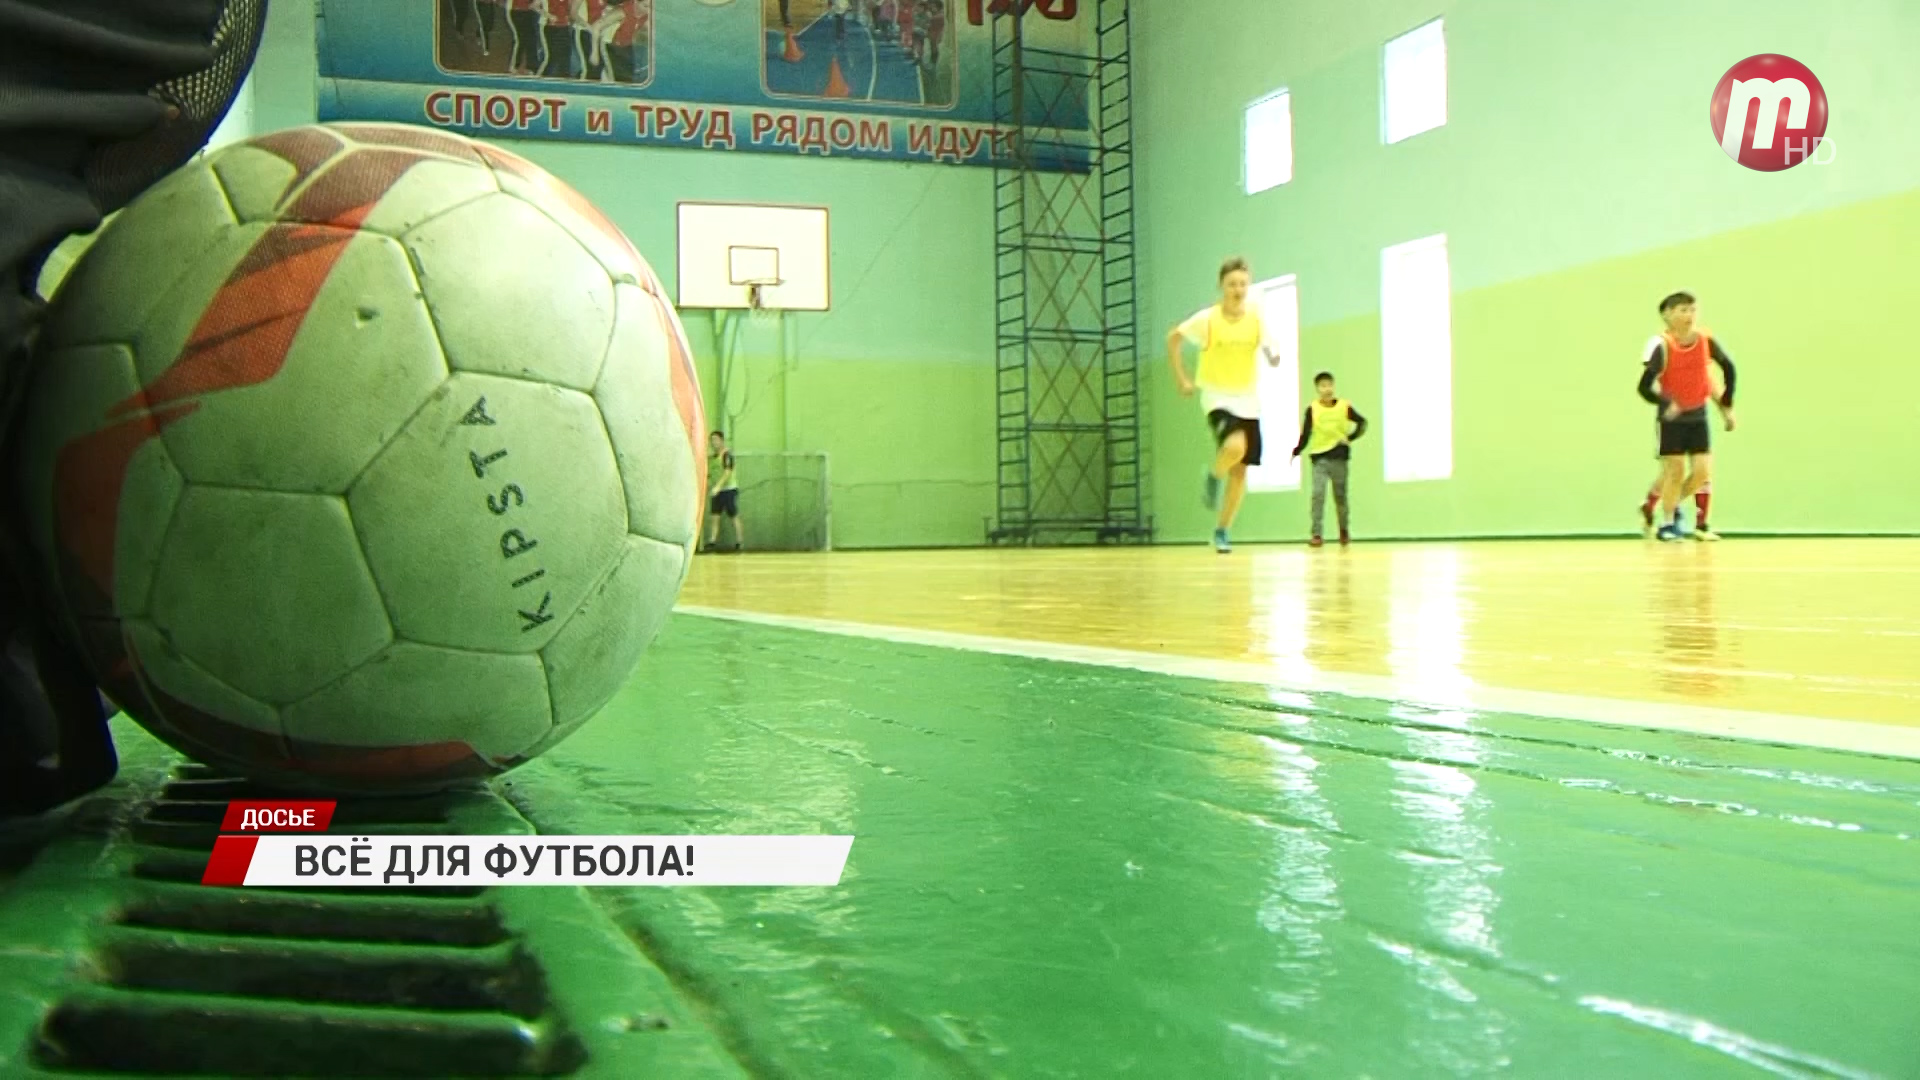 На стадионе Локомотив появится два мини-футбольных поля с искусственным покрытием